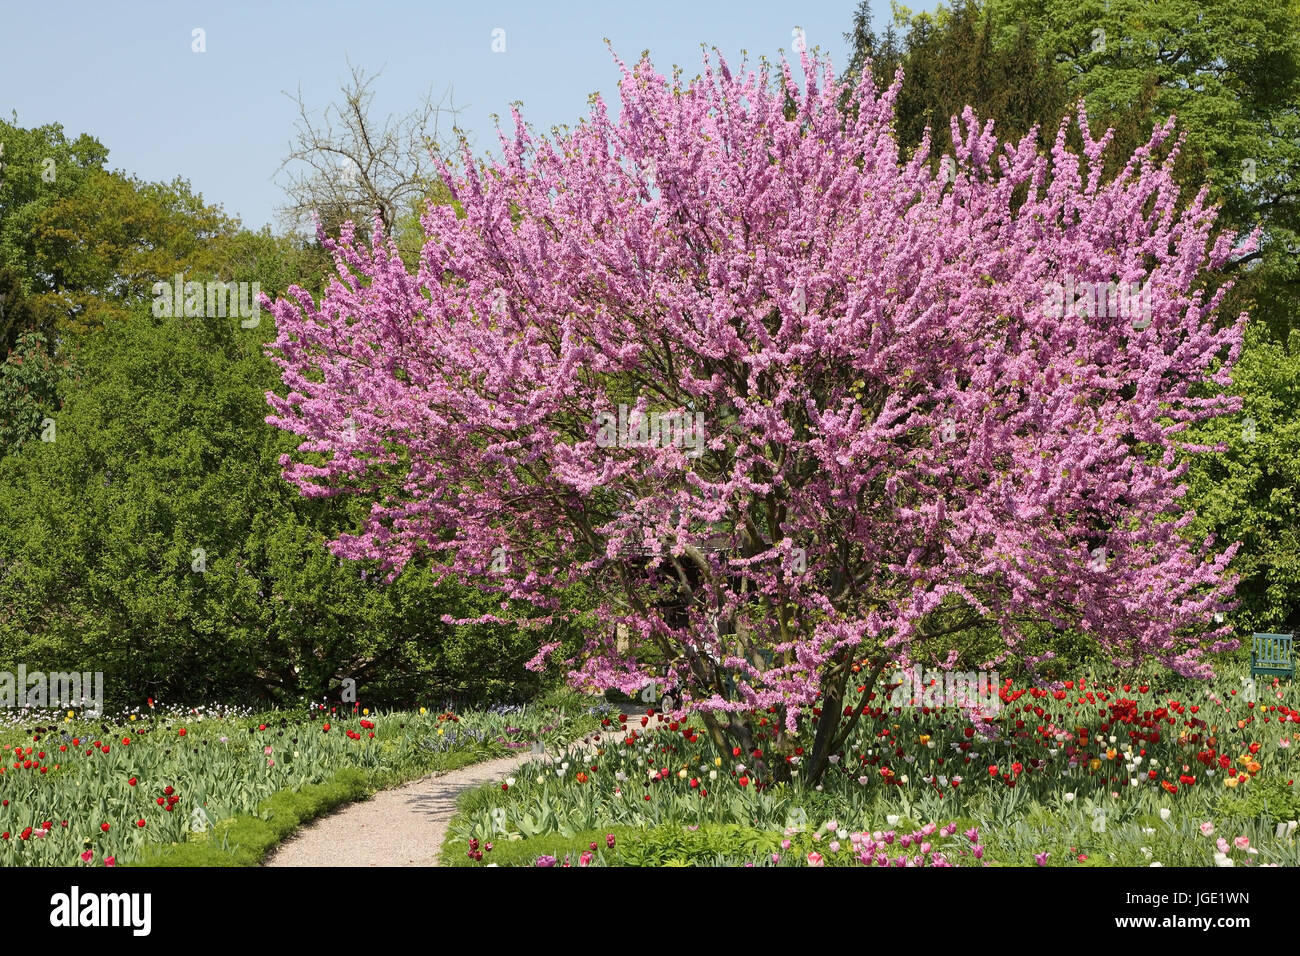 Blossoming Judas tree, Bluehender Judasbaum Stock Photo